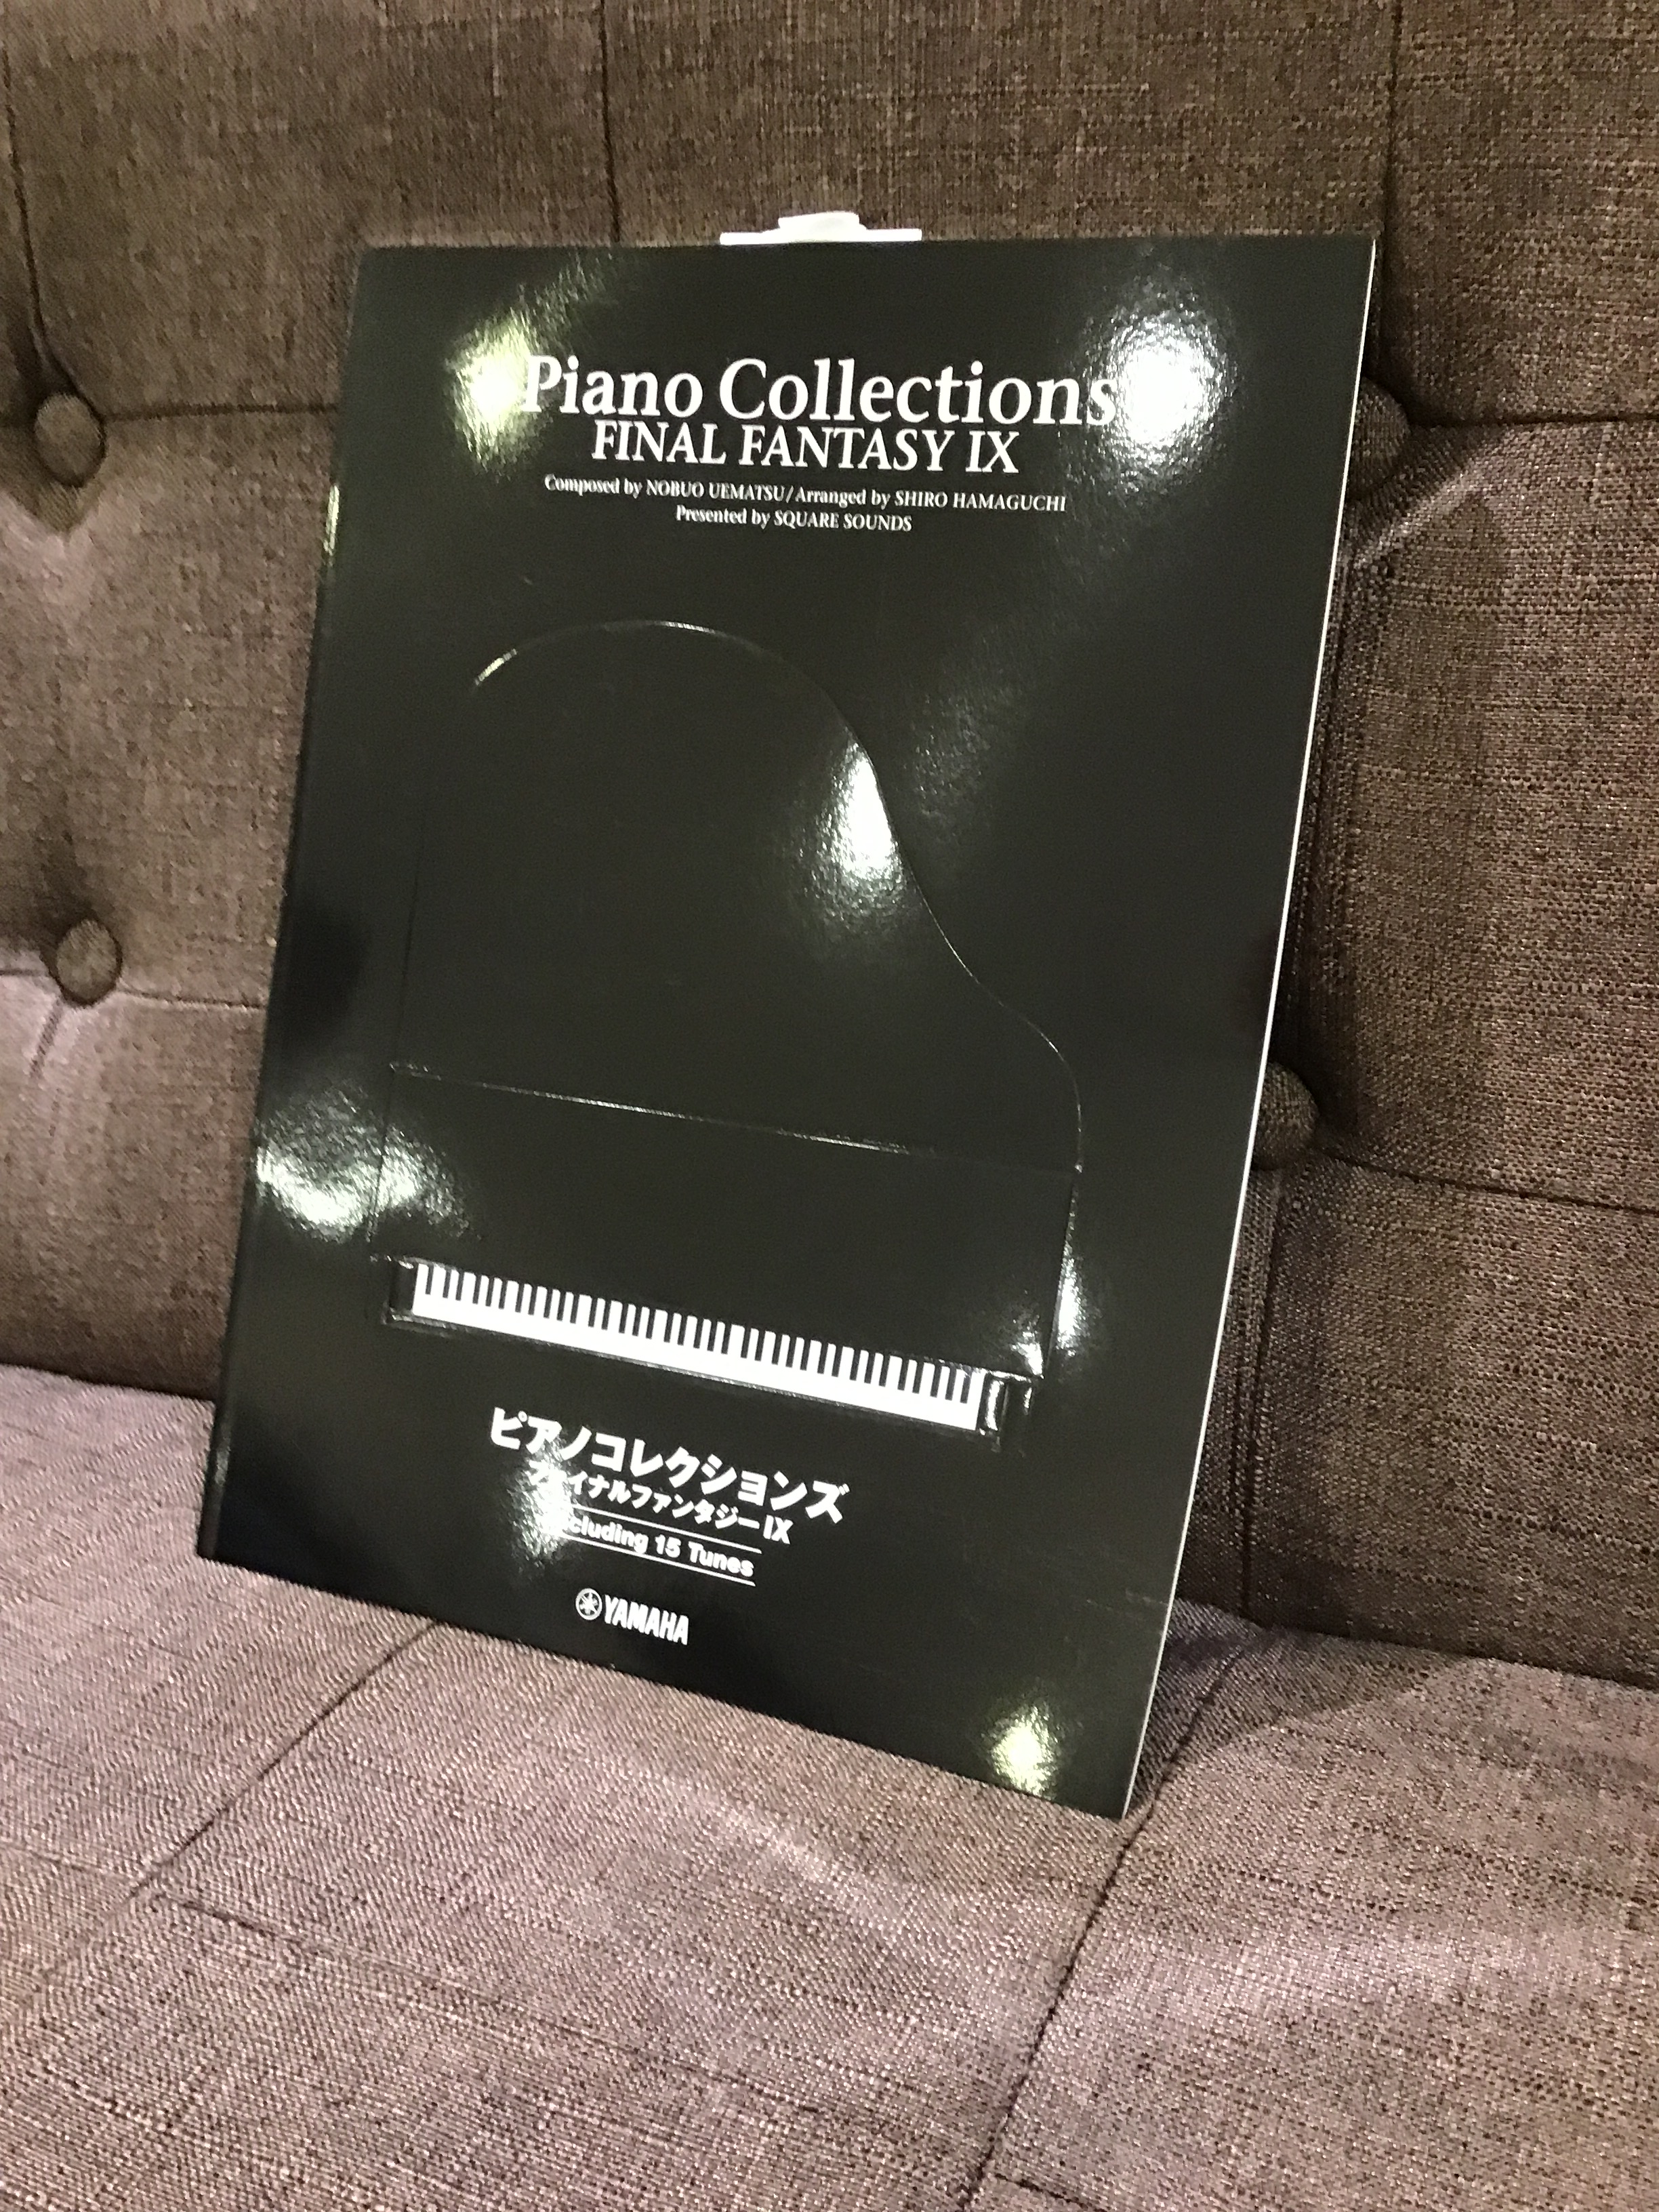 ゲームCD 初版 楽譜付 ファイナルファンタジーIV ピアノコレクションズ